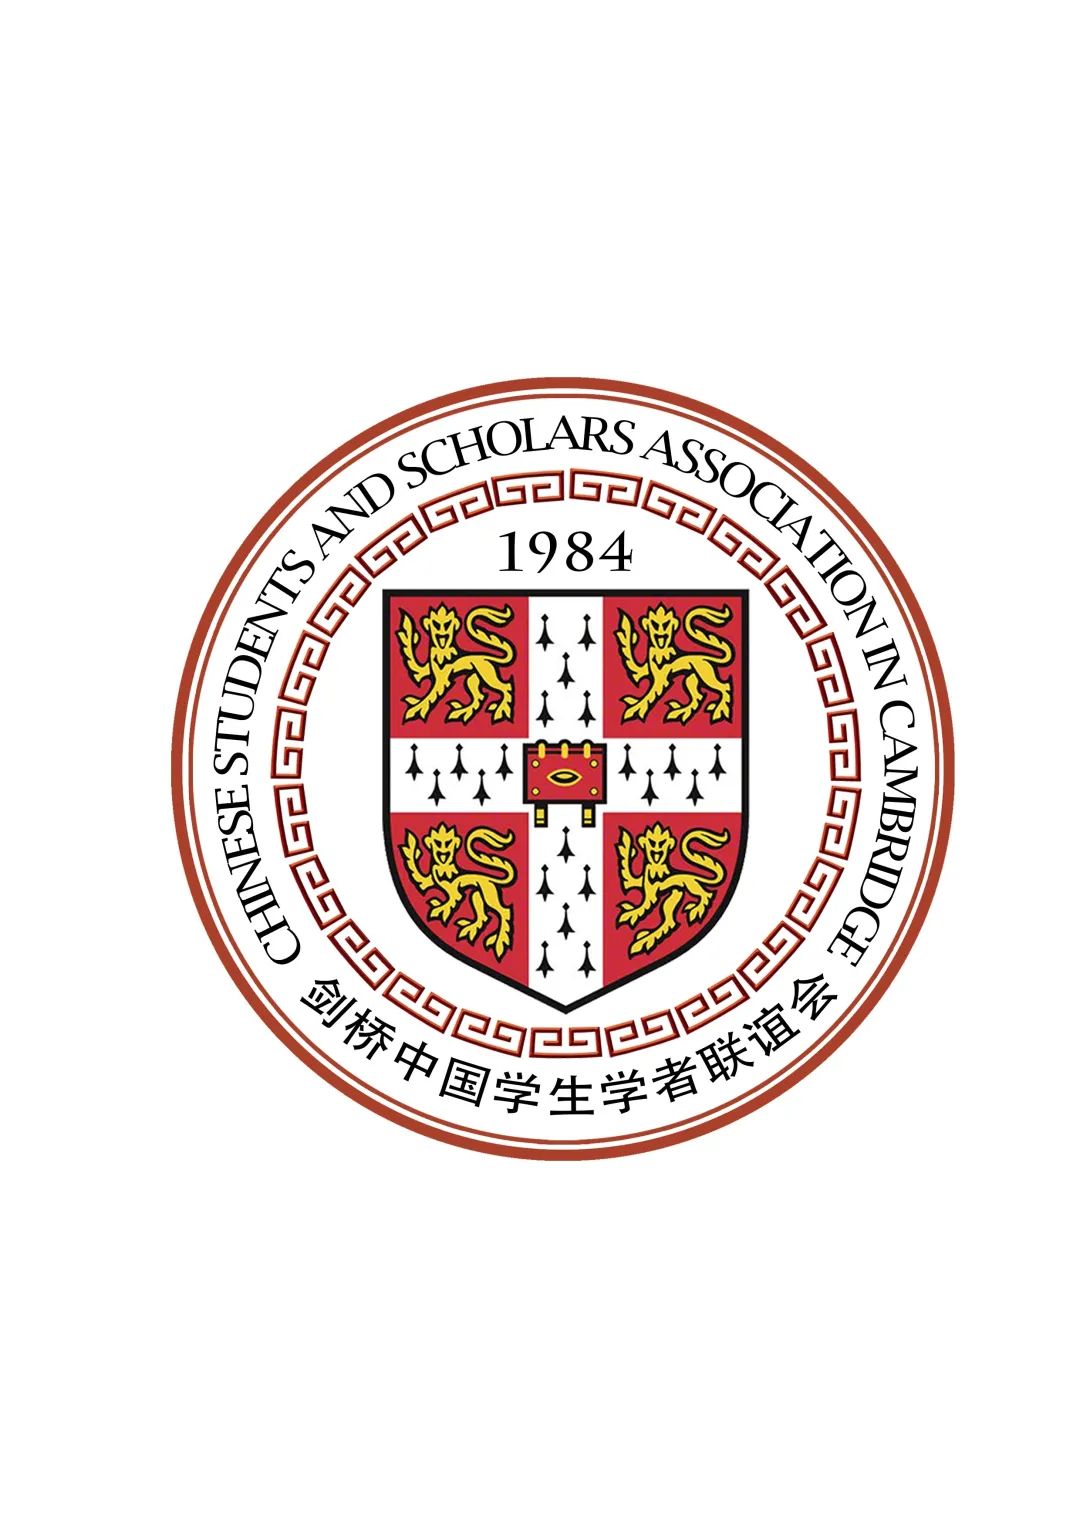 【头条】剑桥中国学生学者联谊会部门介绍 及2020-2021届执委会招新通知